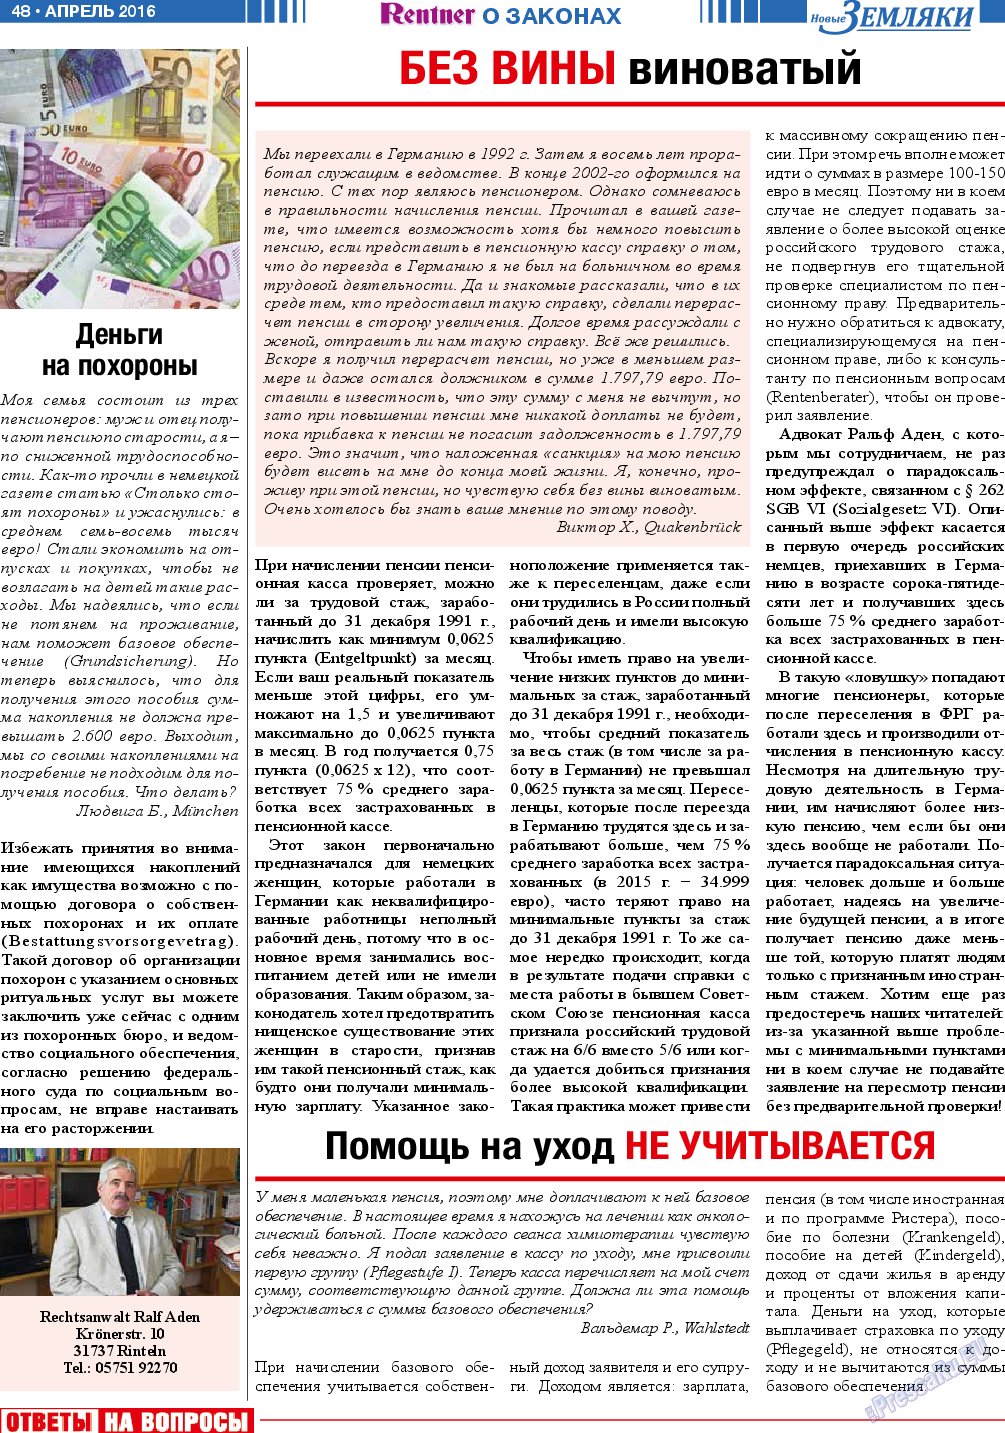 Новые Земляки (газета). 2016 год, номер 4, стр. 48